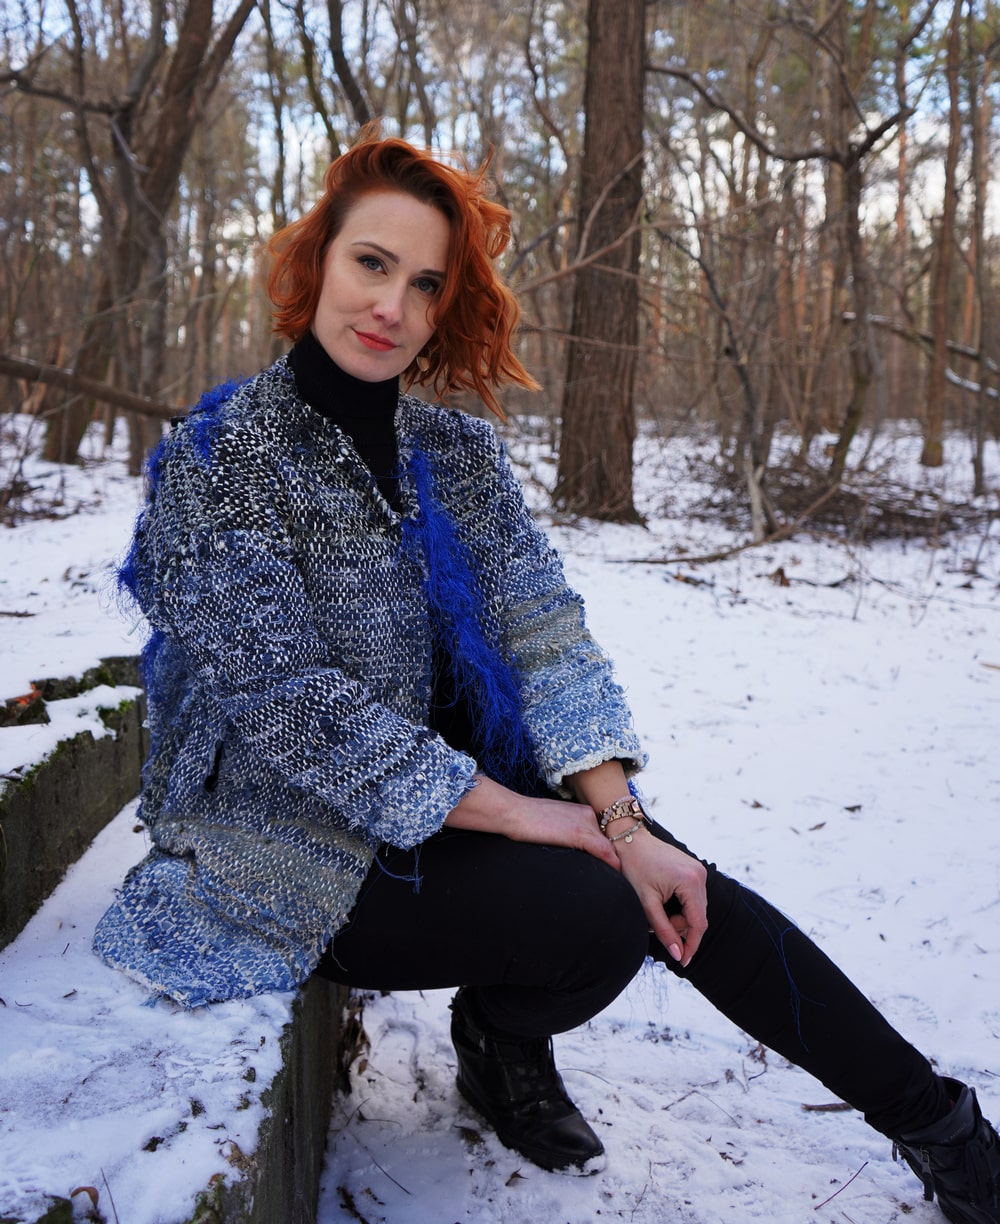 fotografia: anna hlebowicz siedzi na kamiennym schodku, ubrana w niebieski płaszcz swojego autorstwa, w tle zaśnieżony las